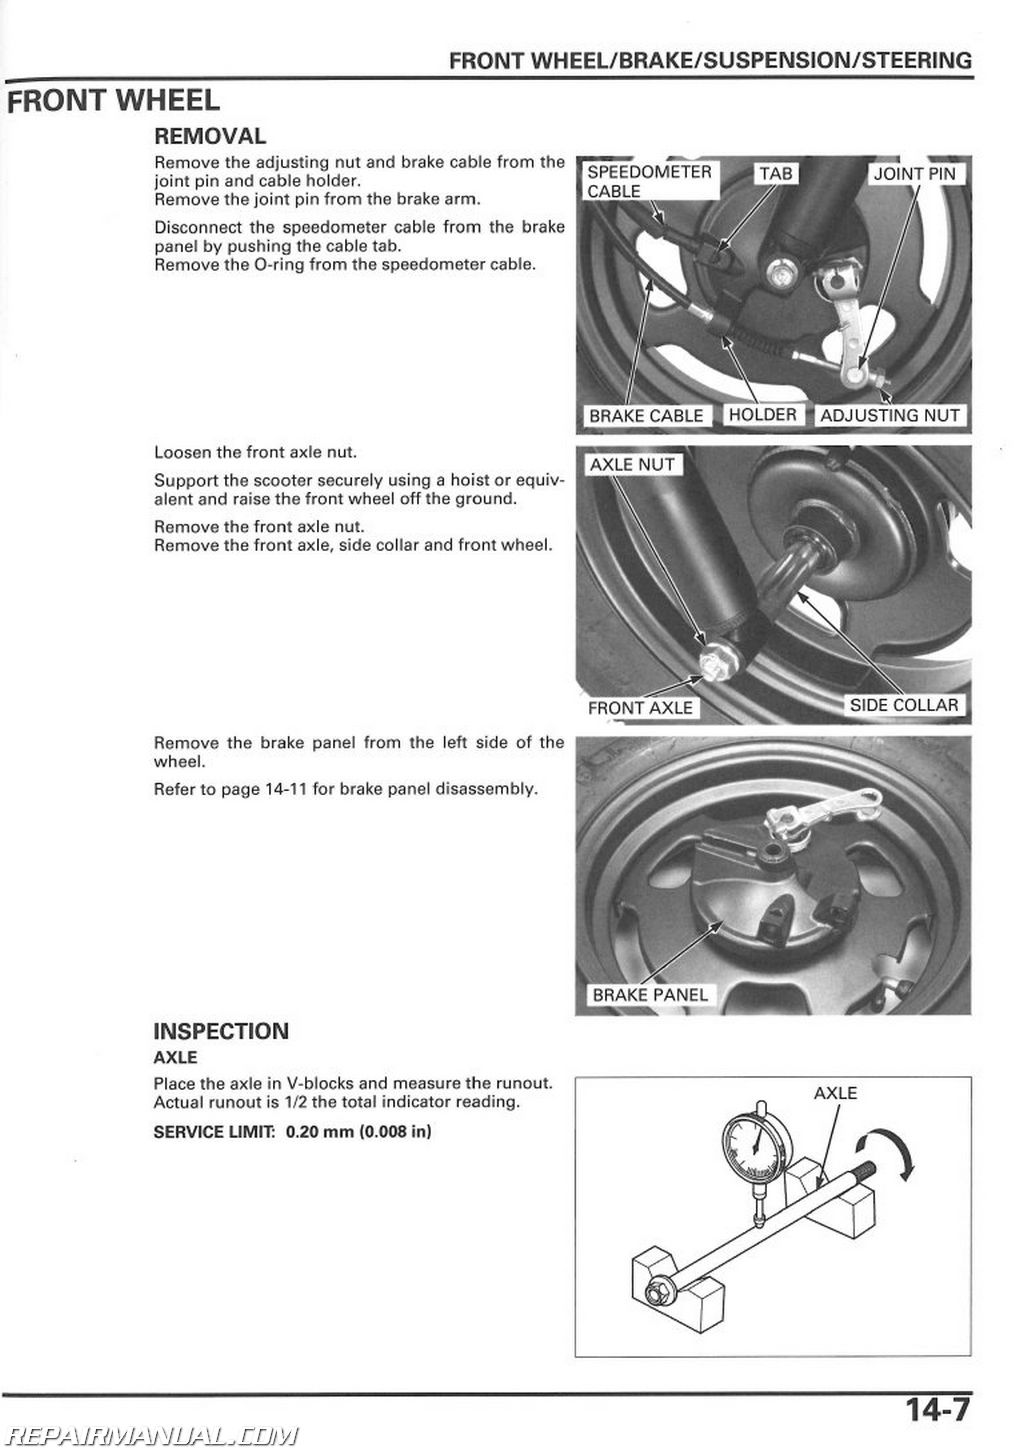 Honda moped repair manual #4